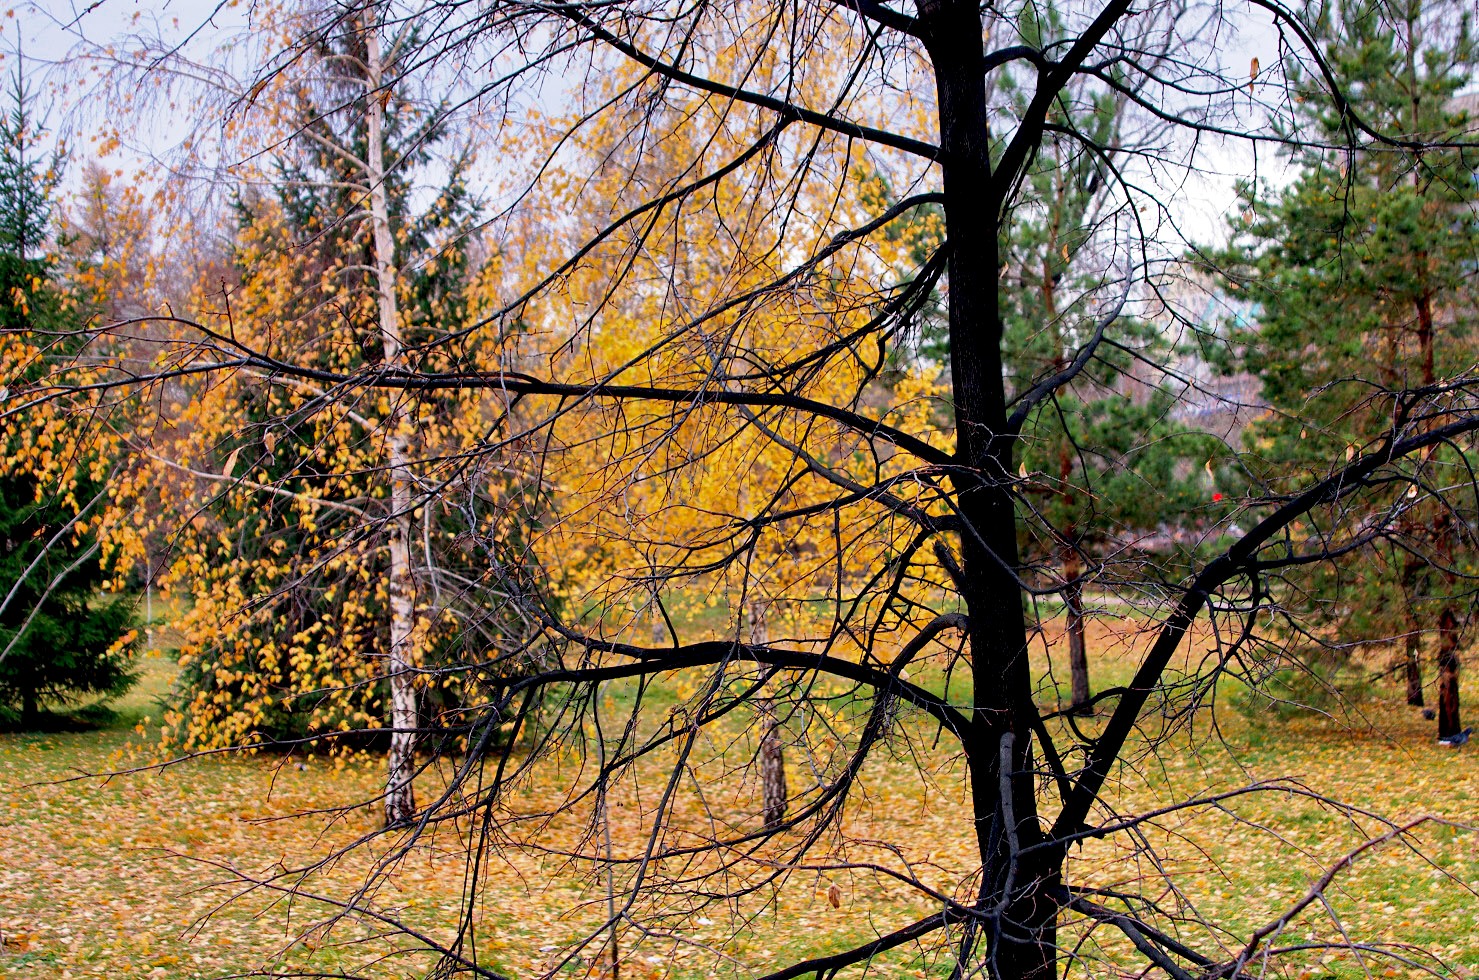 Октября челябинск. Челябинск в октябре. Природа в октябре Челябинск. Фото-природа в октябре под Челябинском. 6 Дней октябрь Челябинск.